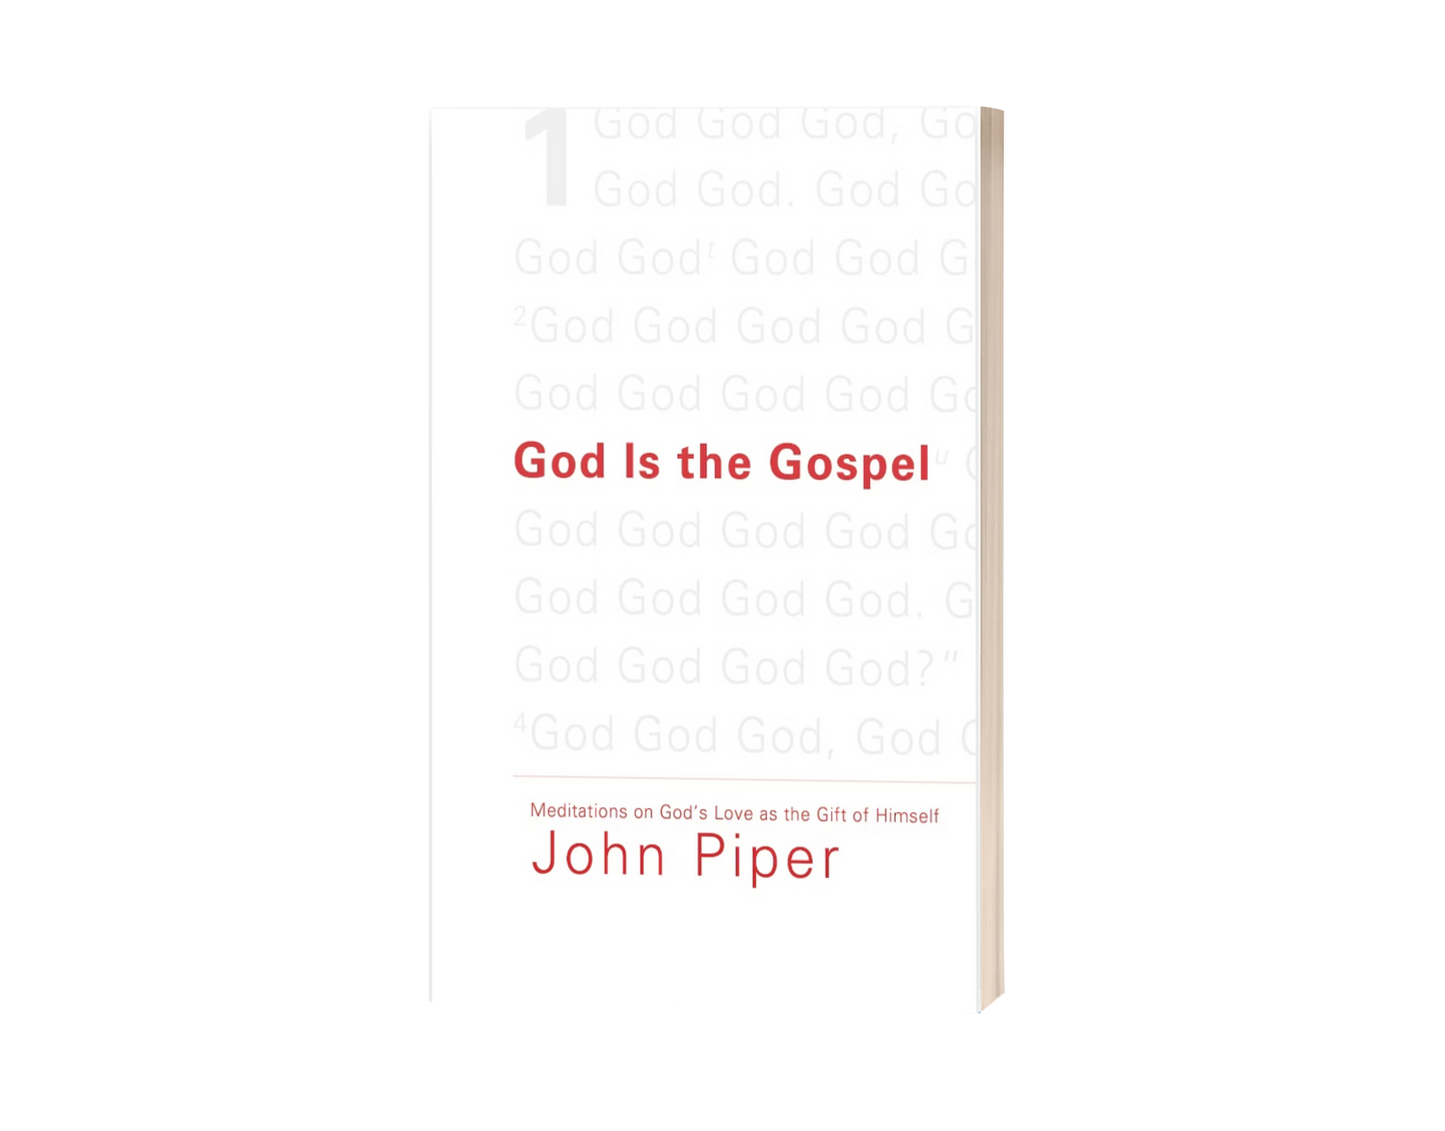 God is the Gospel